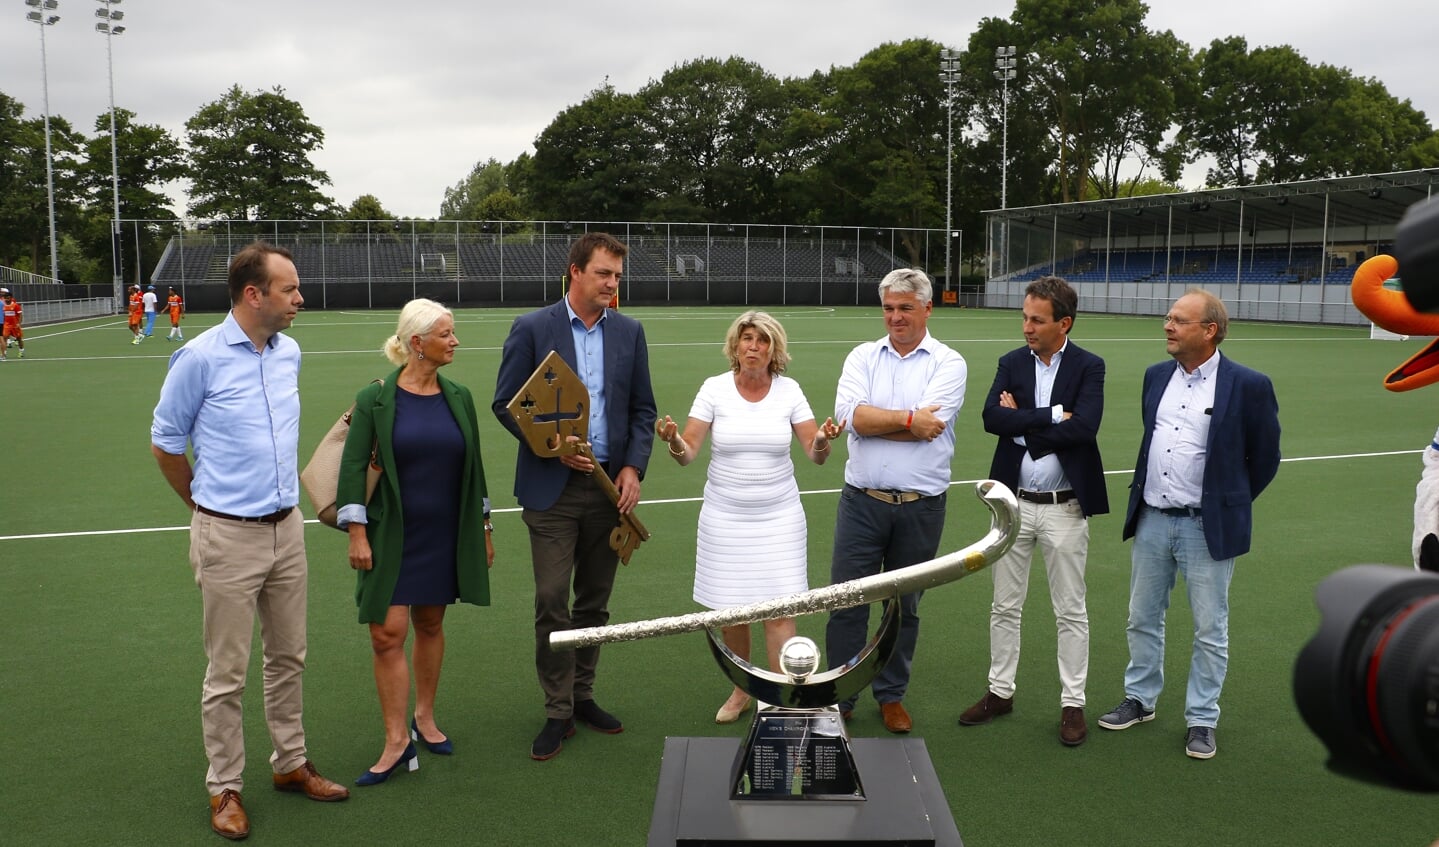 De Champions Trophy wordt eind juni 2018 in Breda gespeeld.